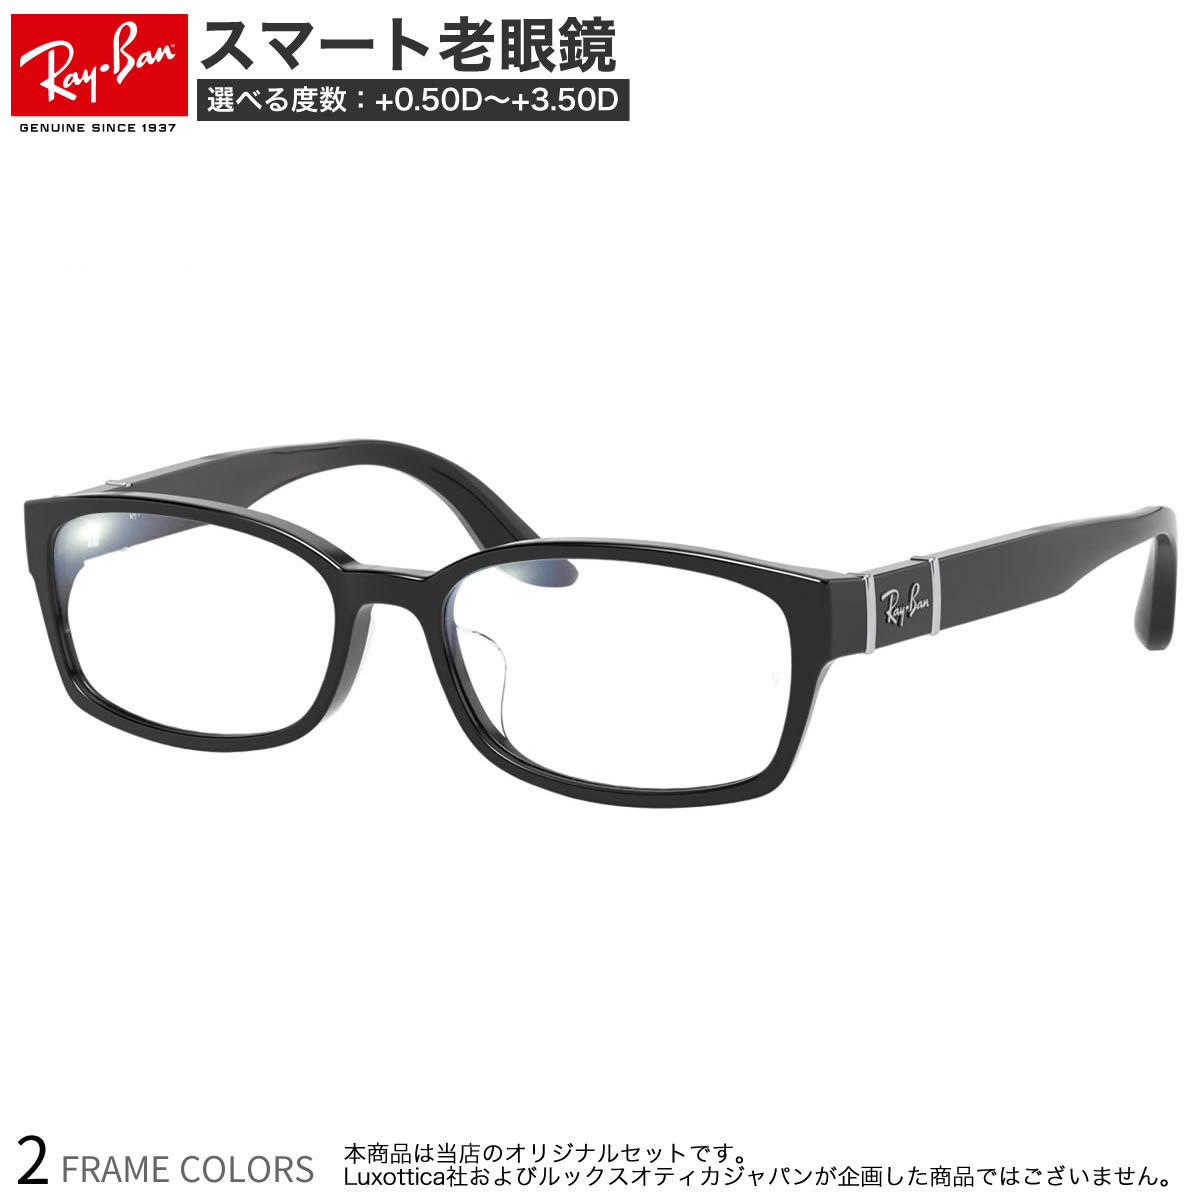 レイバン RX5198 53サイズ スマート老眼鏡 ブルーライトカット PCメガネ UVカット 紫外線カット Ray-Ban あす楽対応 スマホ老眼 リーディンググラス シニアグラス UV400 [OS]